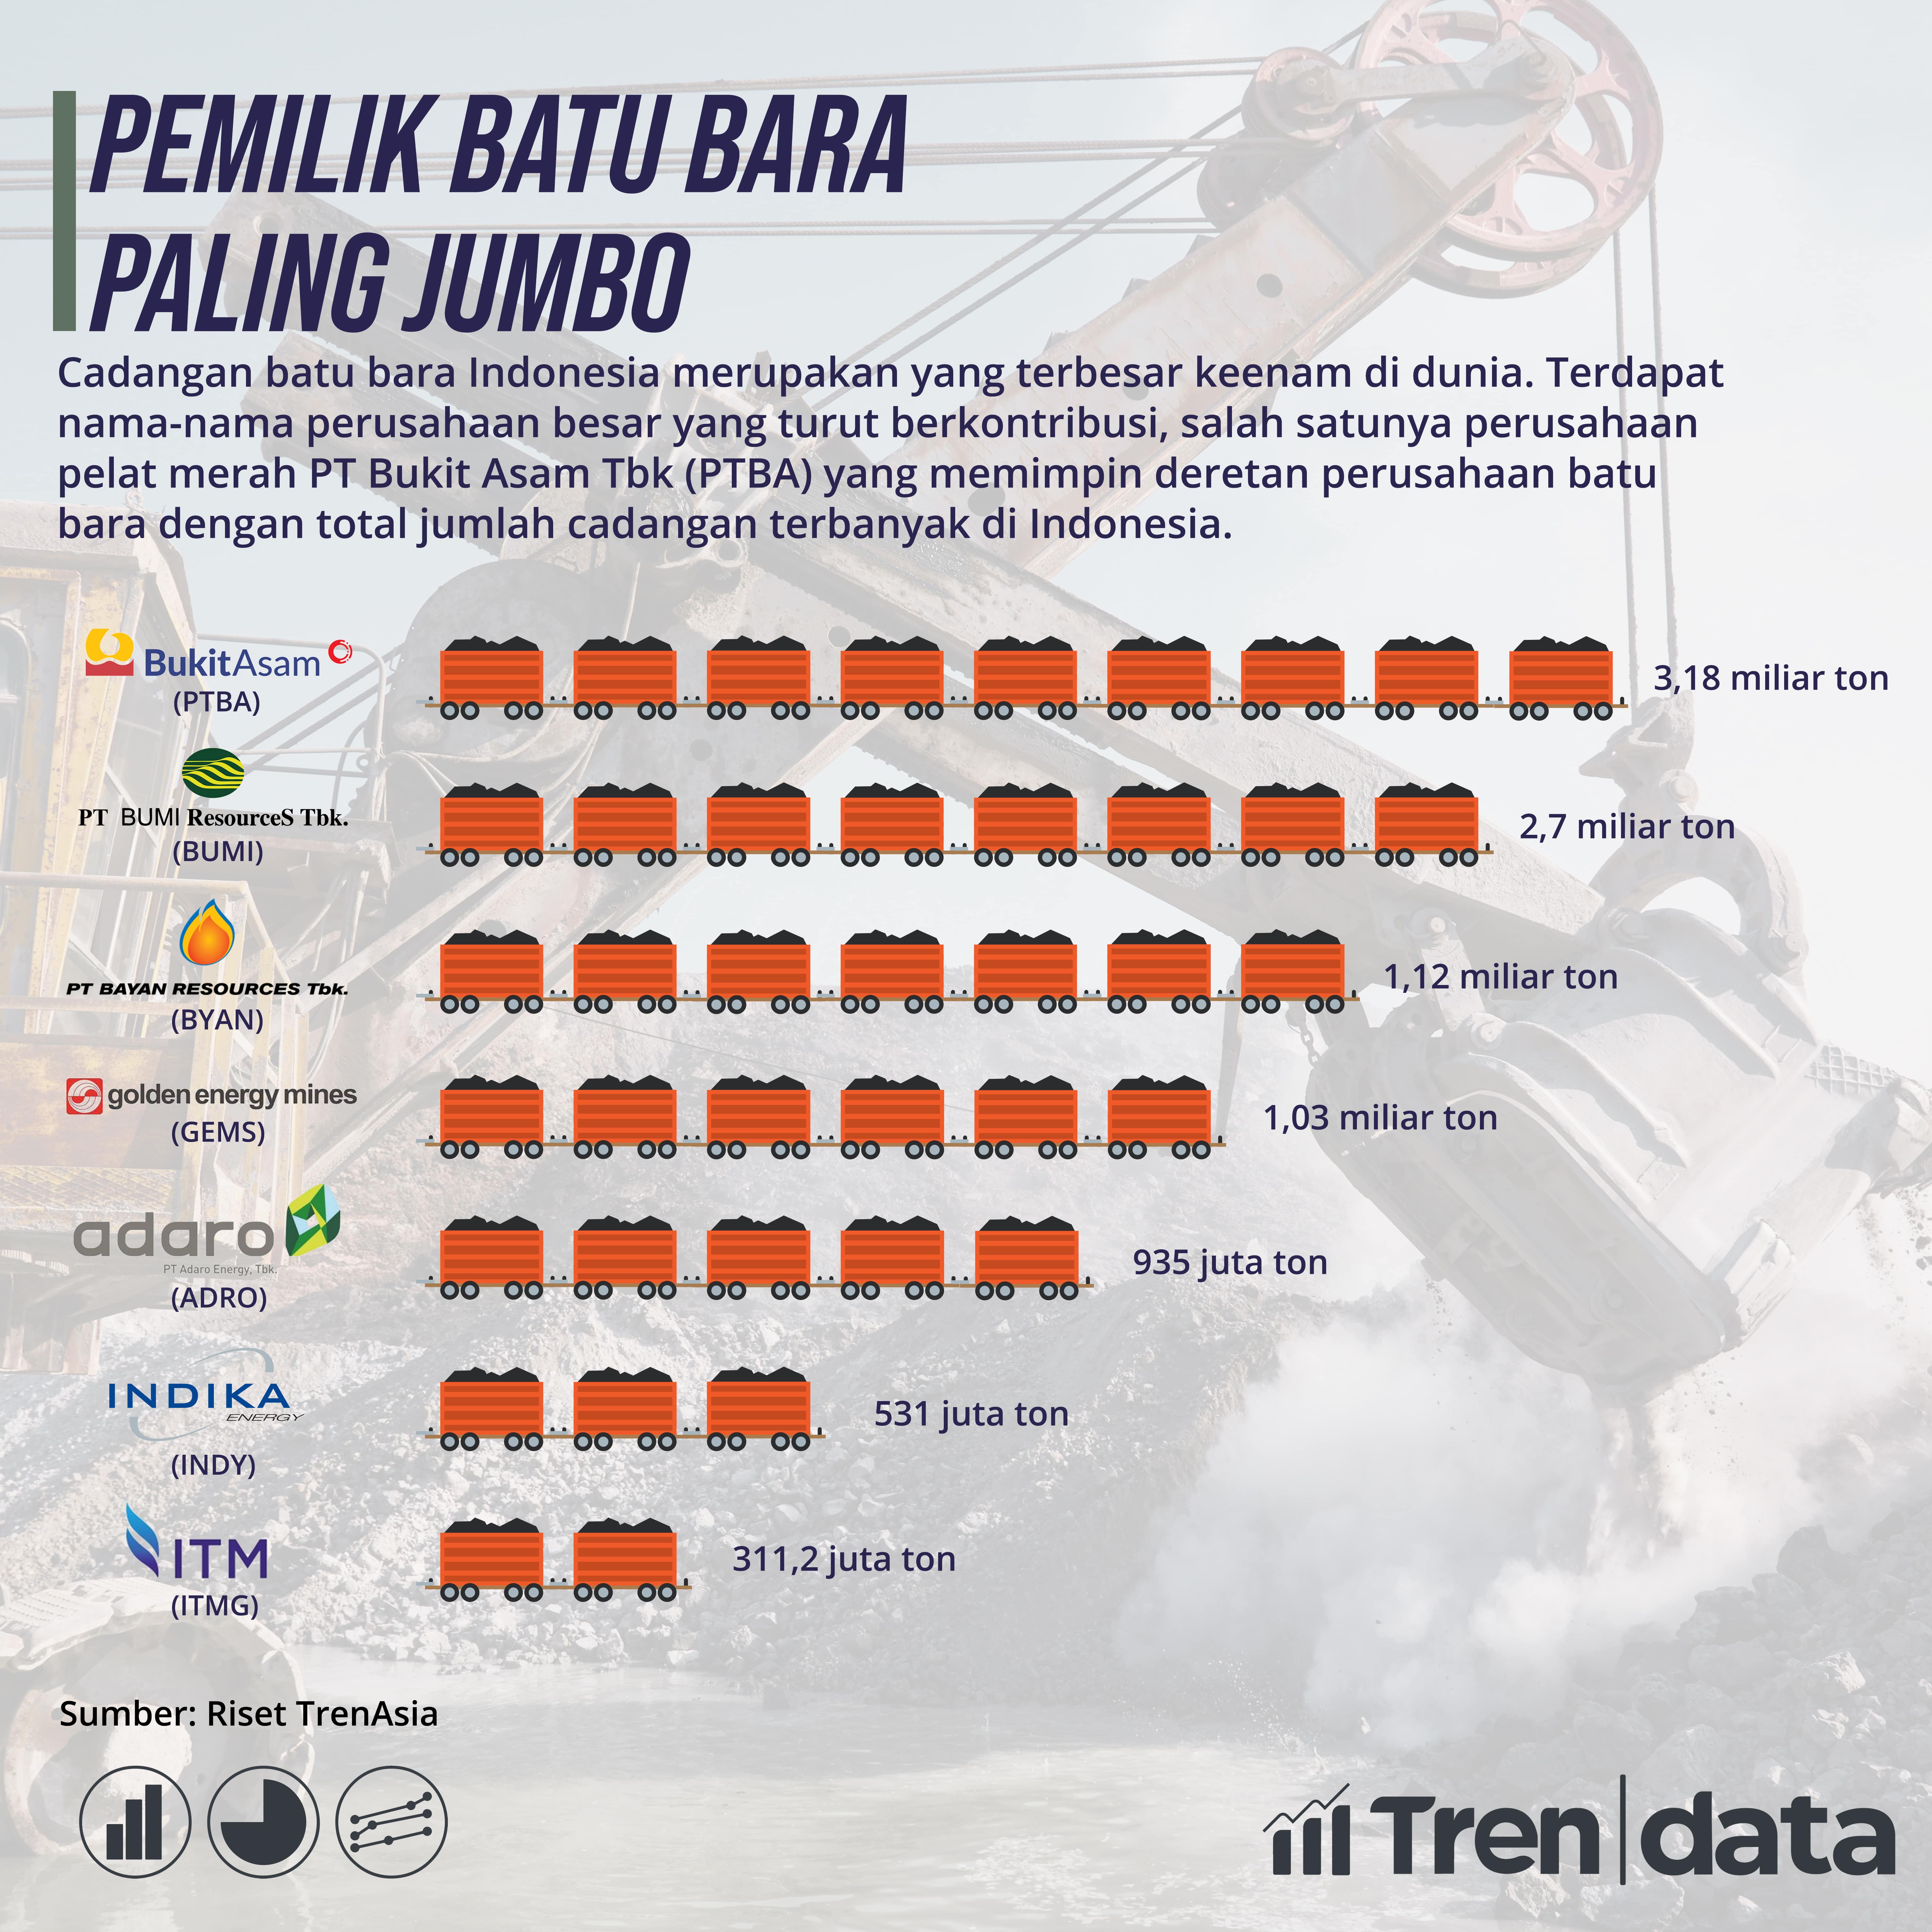 Perusahaan Batu Bara dengan Jumlah Cadangan Terbanyak di Indonesia